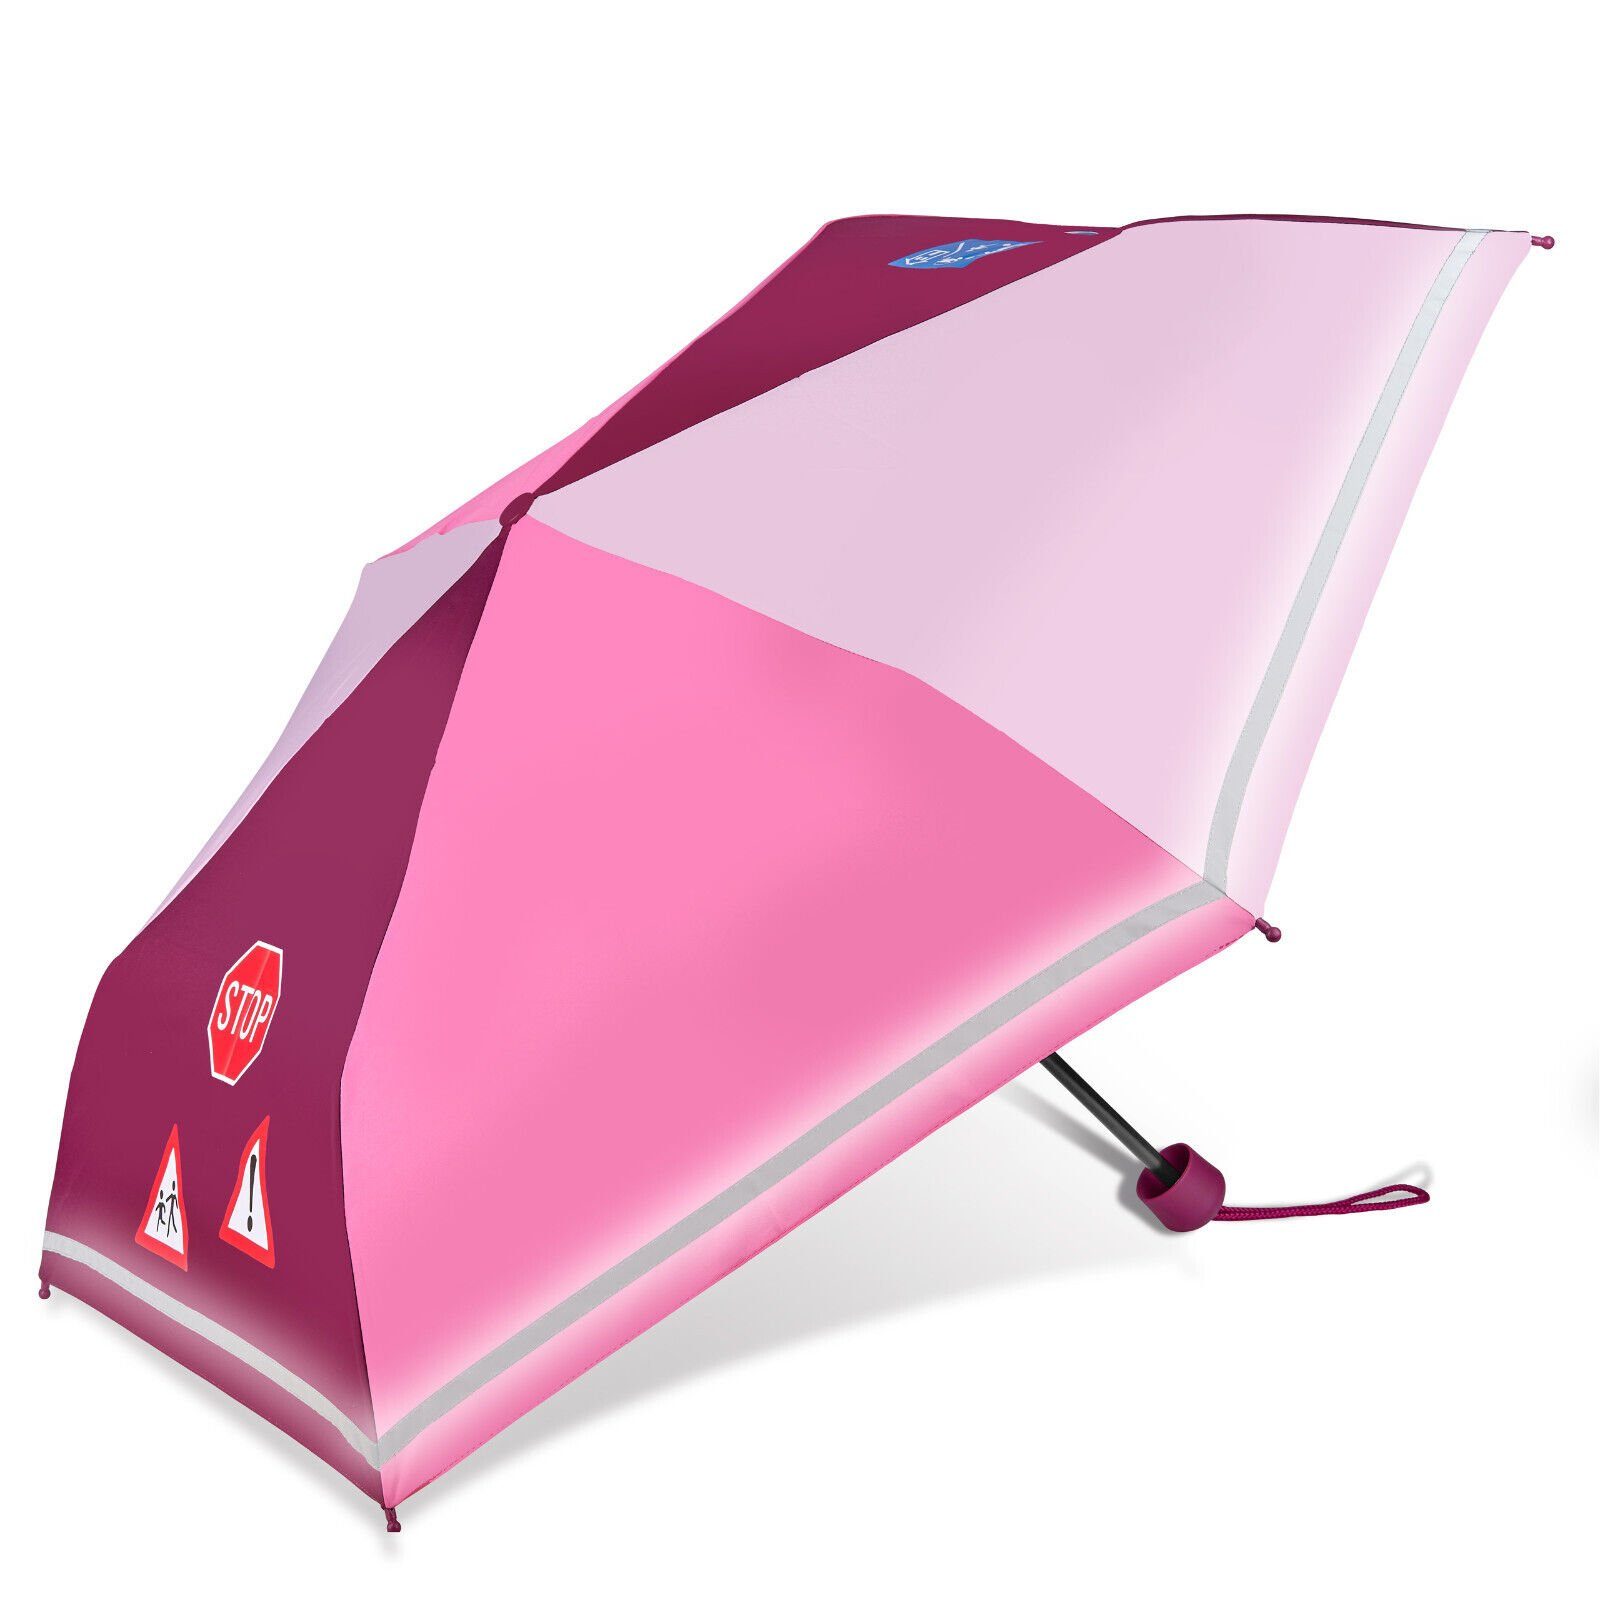 Dr. Taschenregenschirm, leicht, speziell stabil kompakt, für Neuser reflektierend, Kinder,